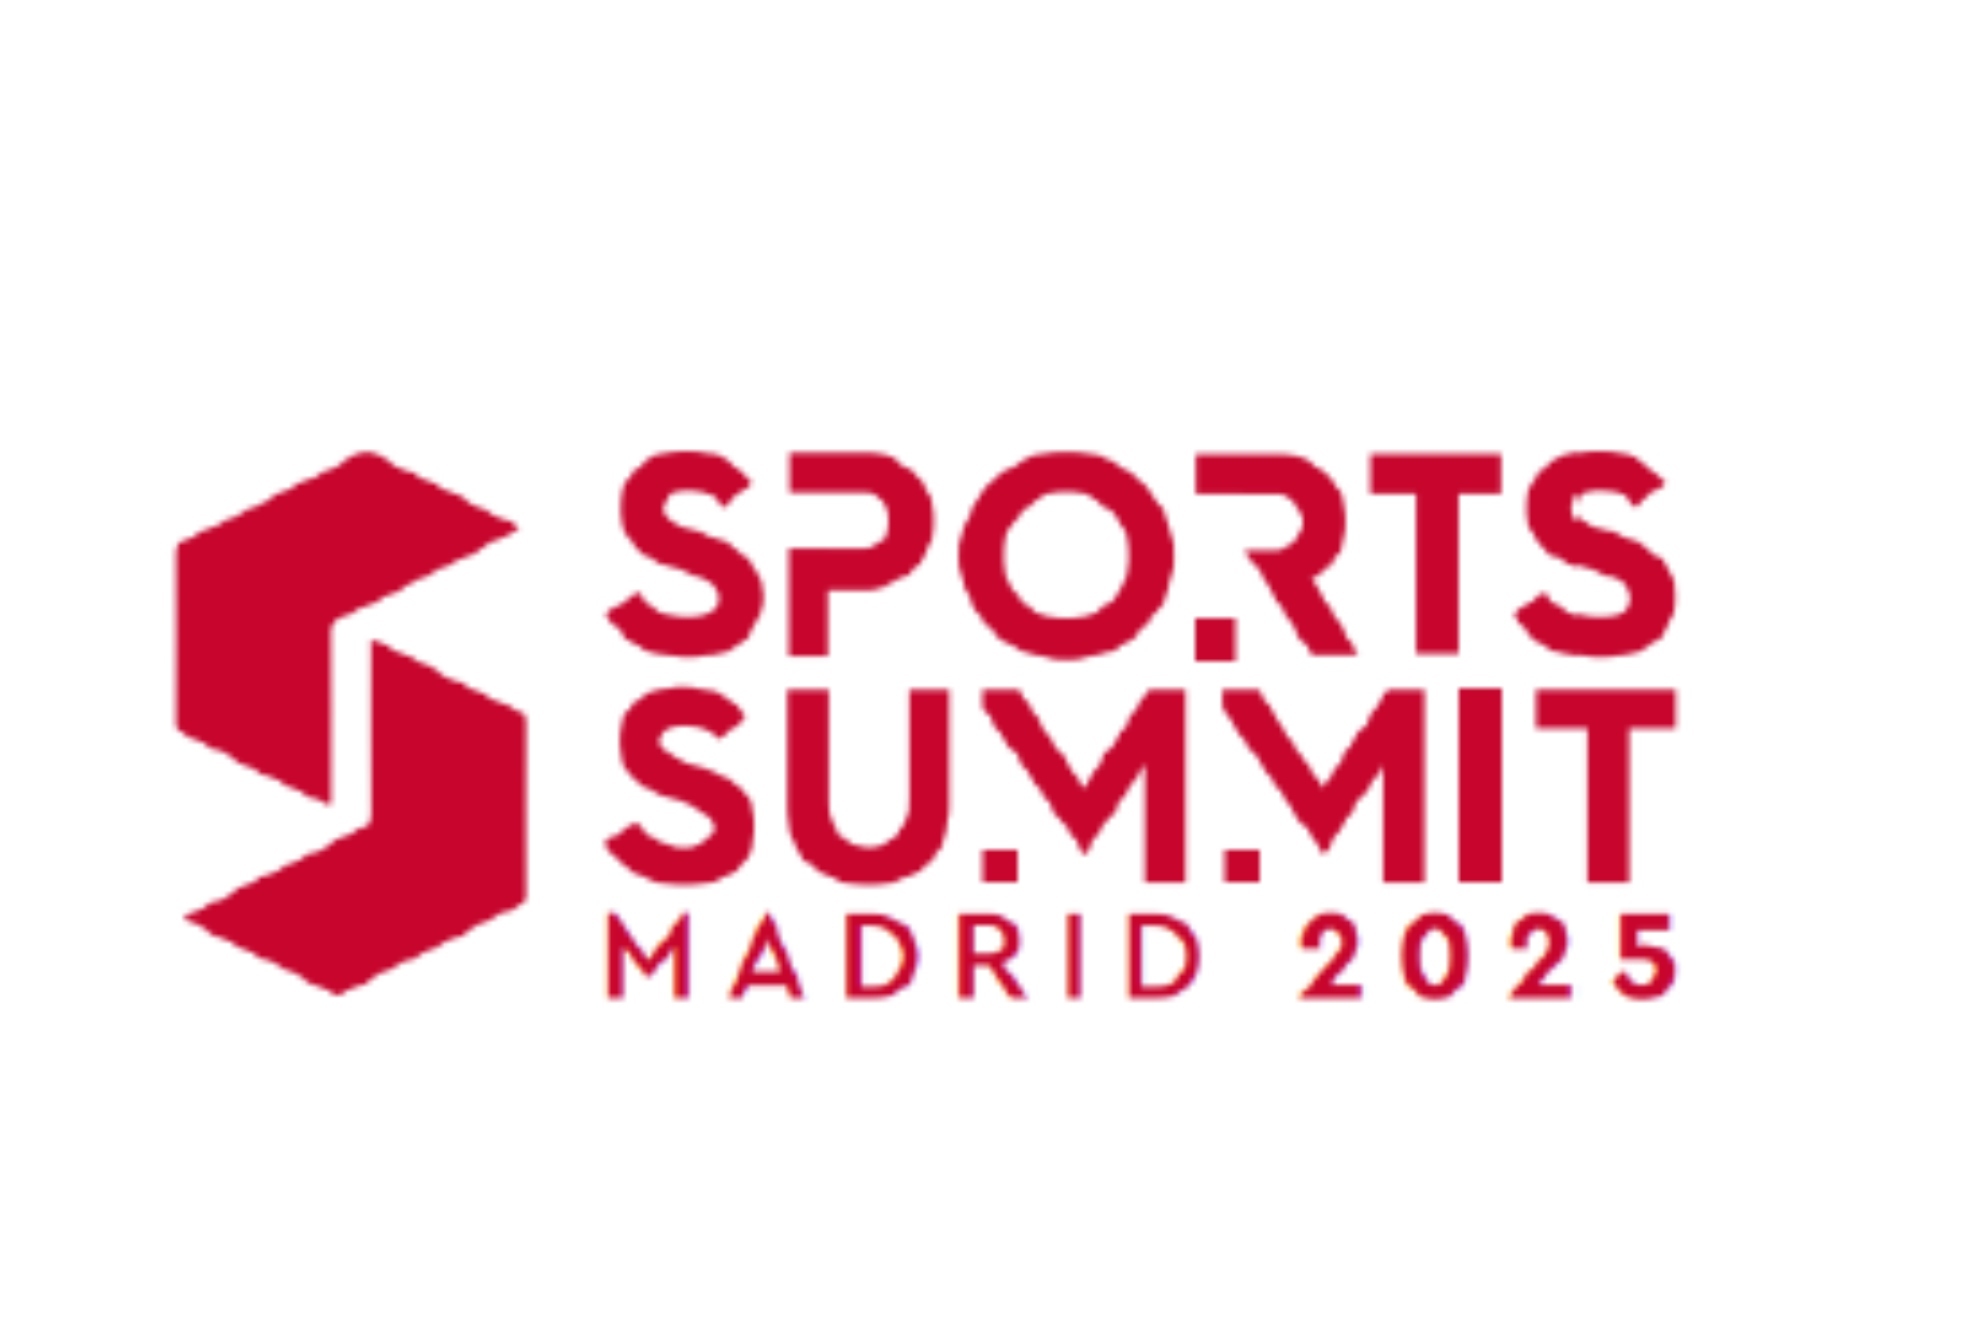 Madrid ser� sede del mayor encuentro internacional del deporte y sus industrias vinculadas